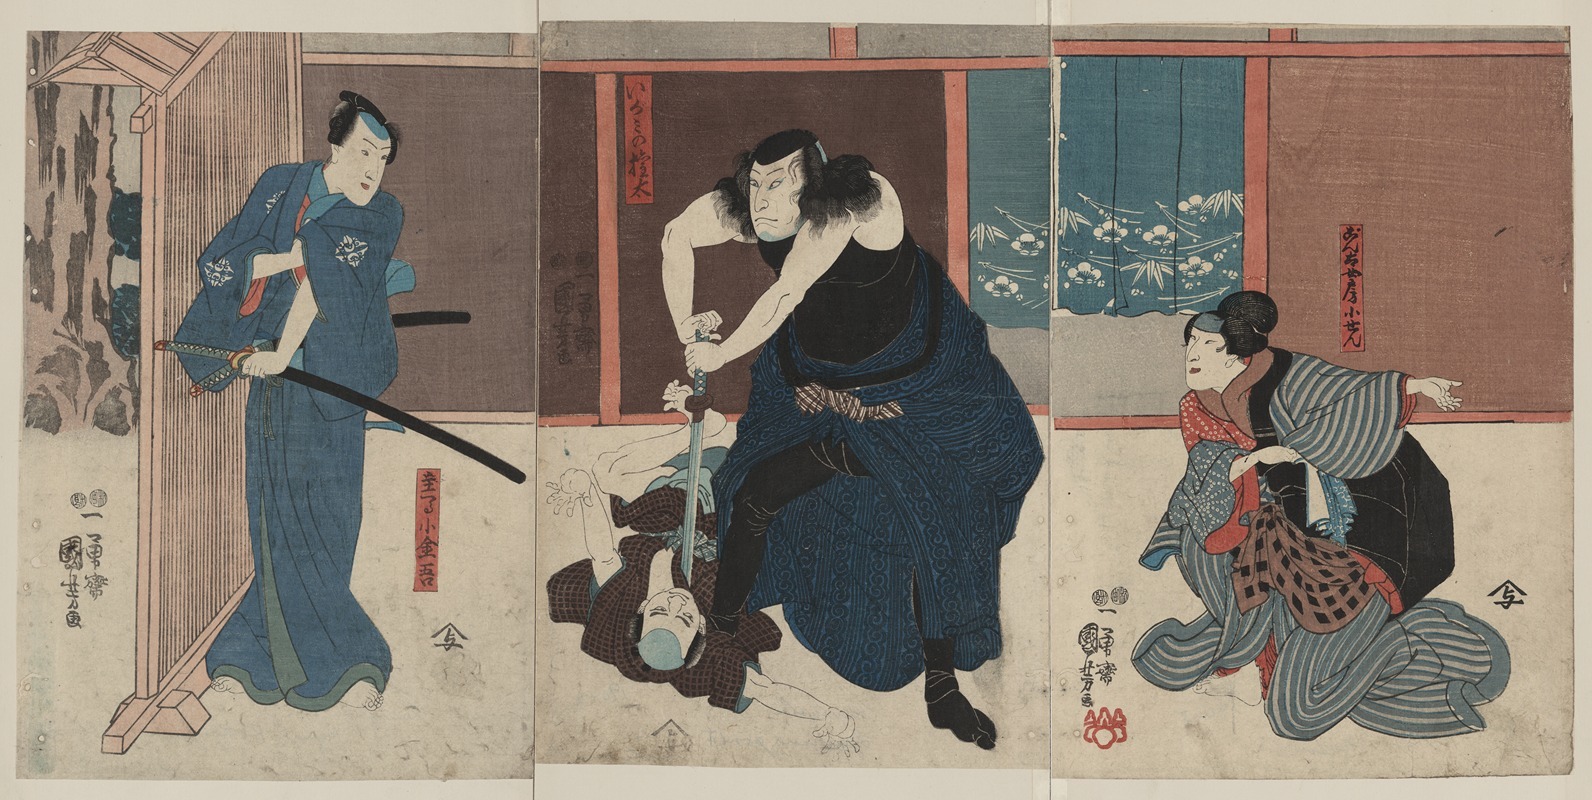 Utagawa Kuniyoshi - Igami no gonta gonta nyōbō kosen shūme kokingo